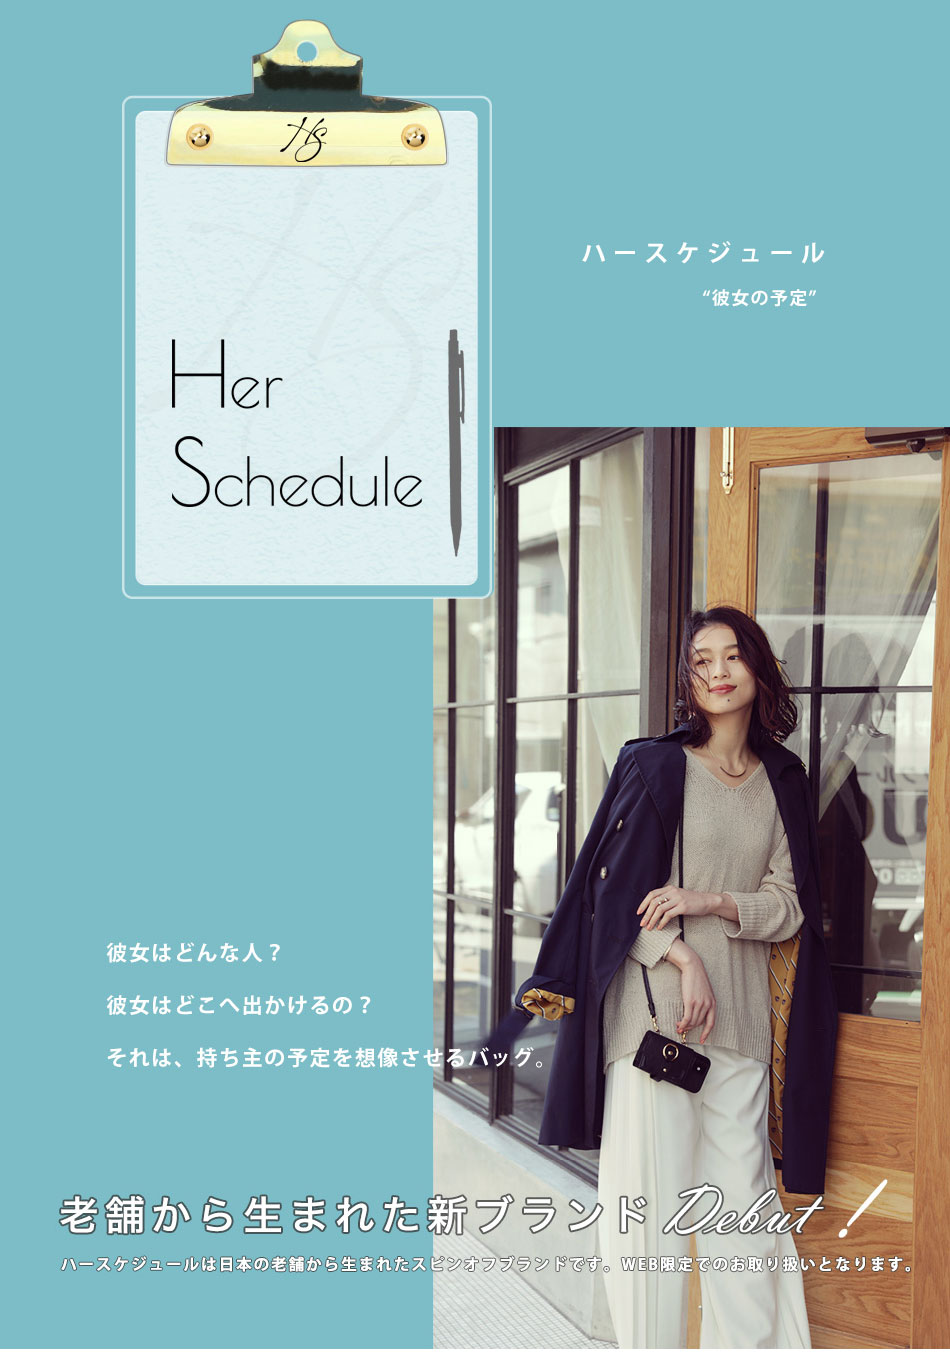 【Her Schedule】ブランド紹介ページ | 限定バッグと出会えるエルトゥーク